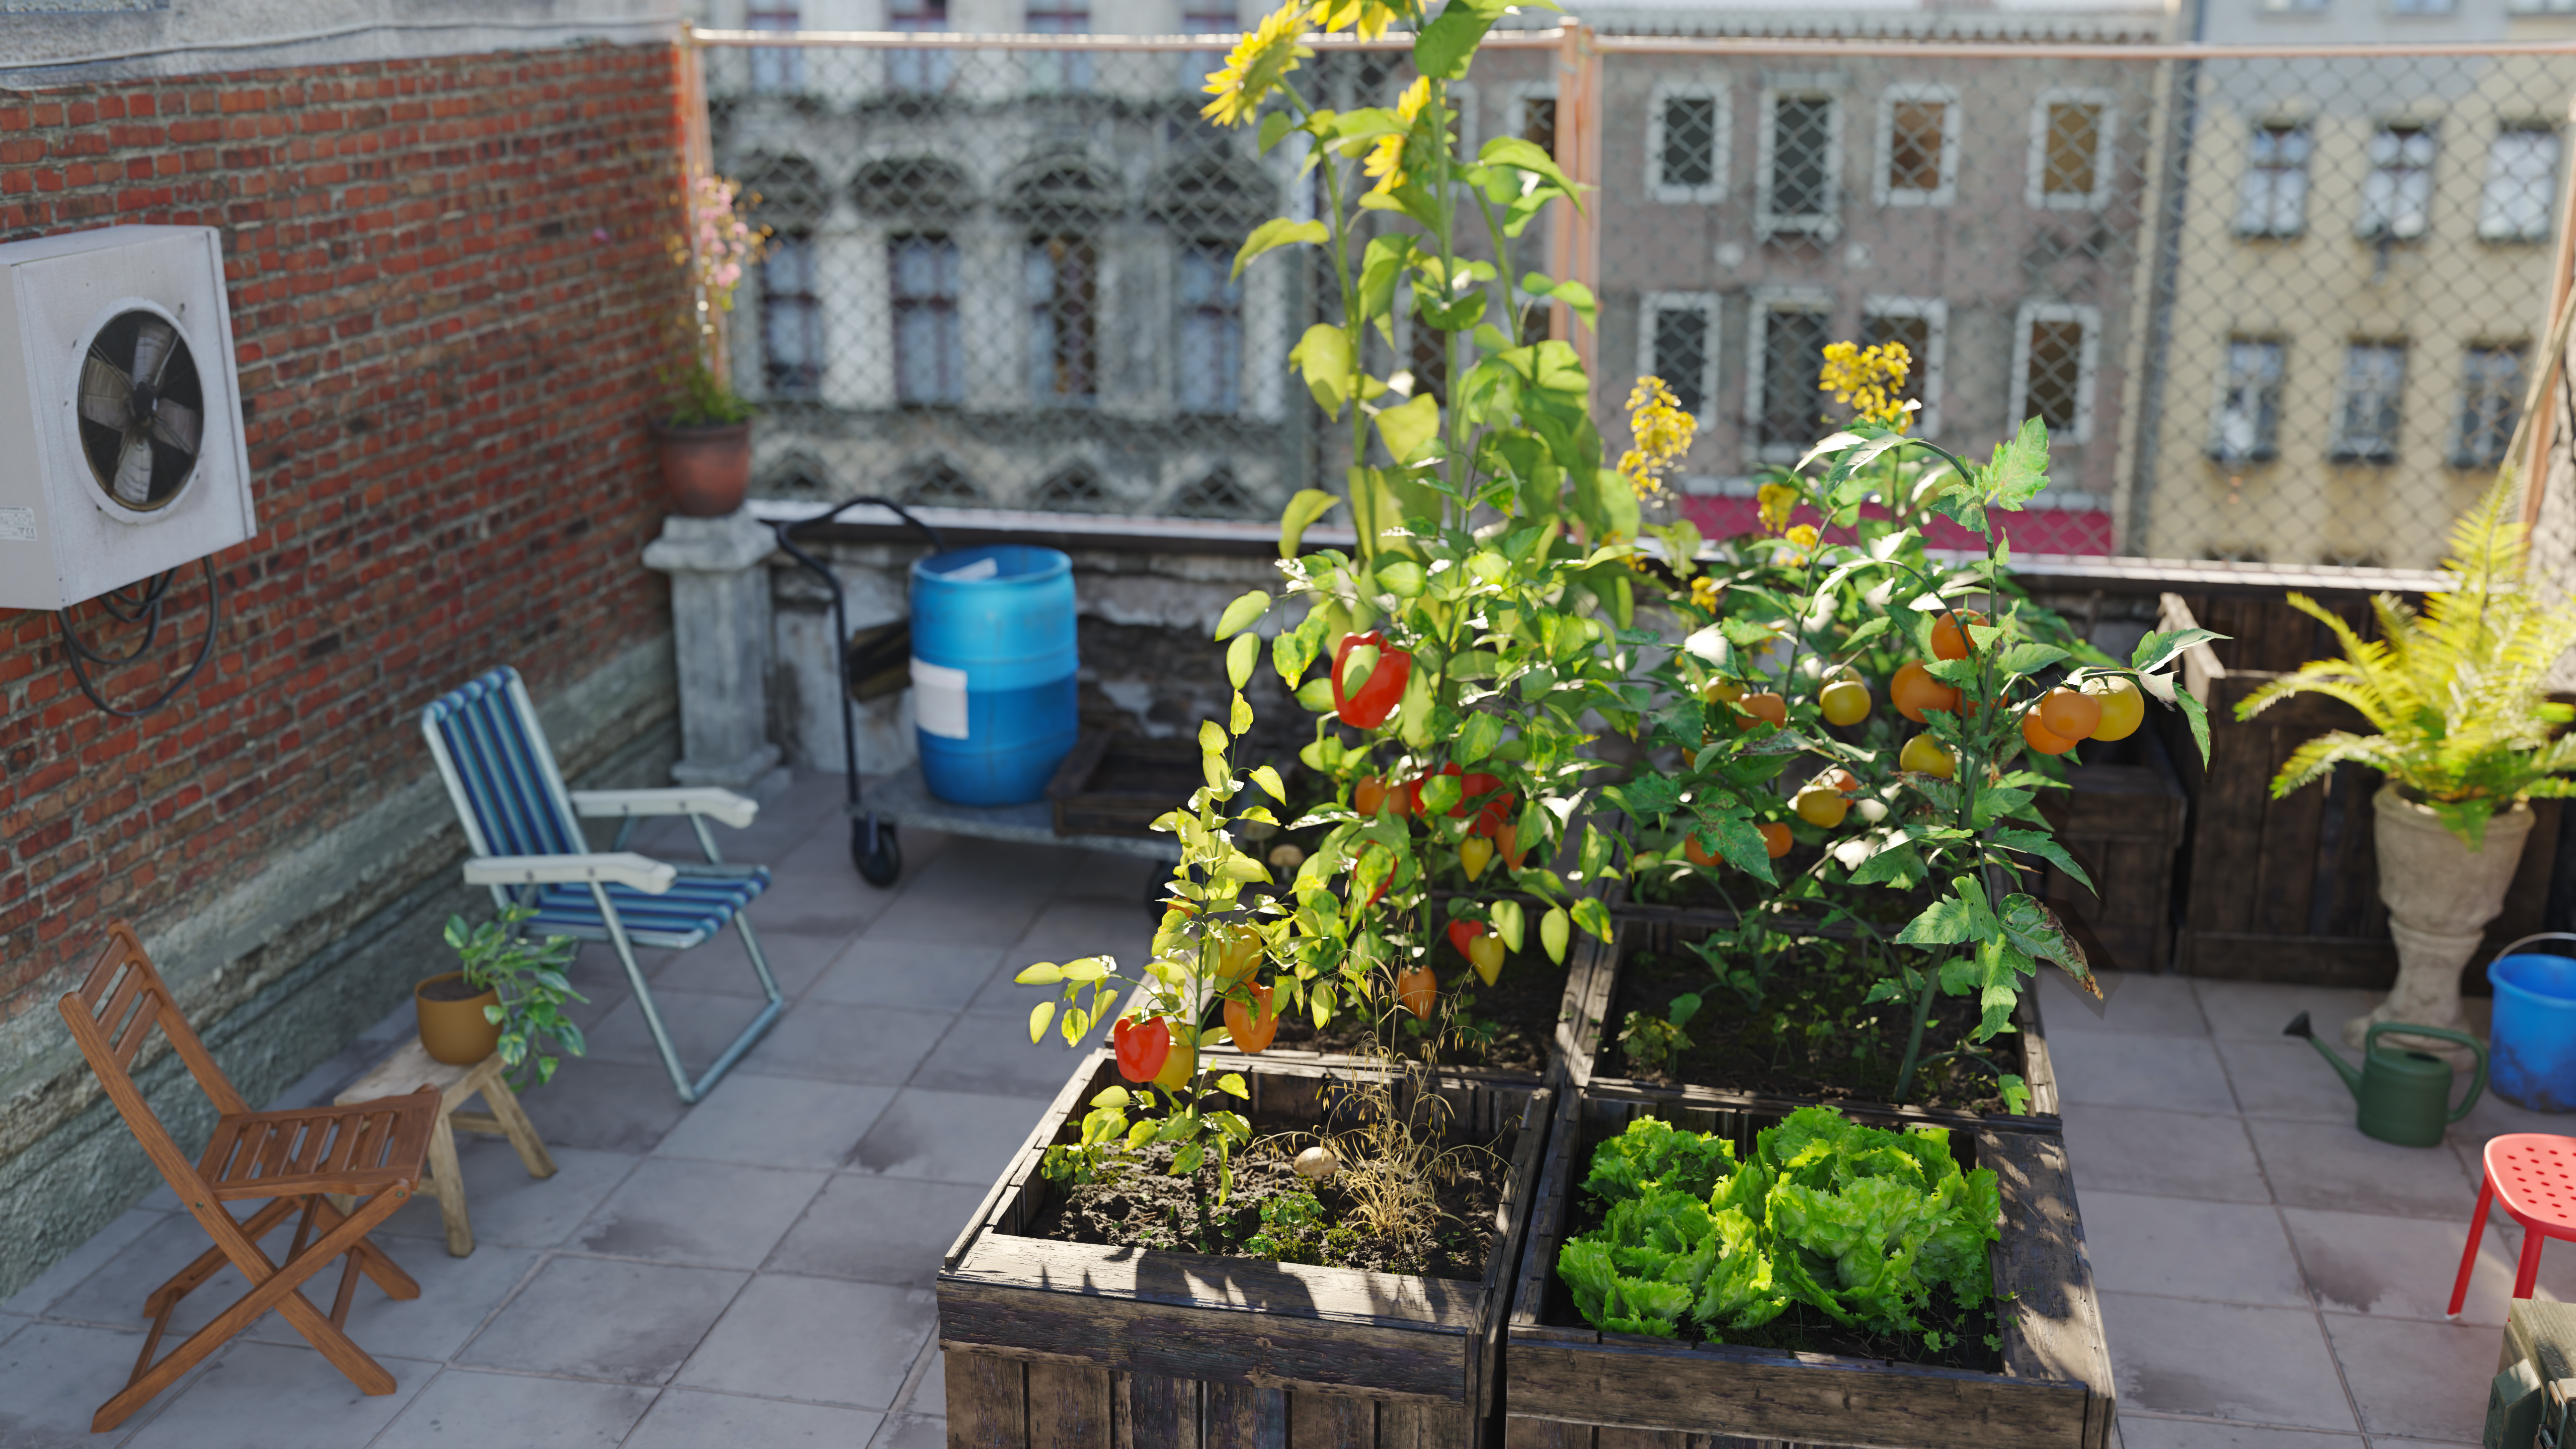 Urbani vrtiček na terasi bloka v mestni četrti, v soncu uspevajo paradižniki.